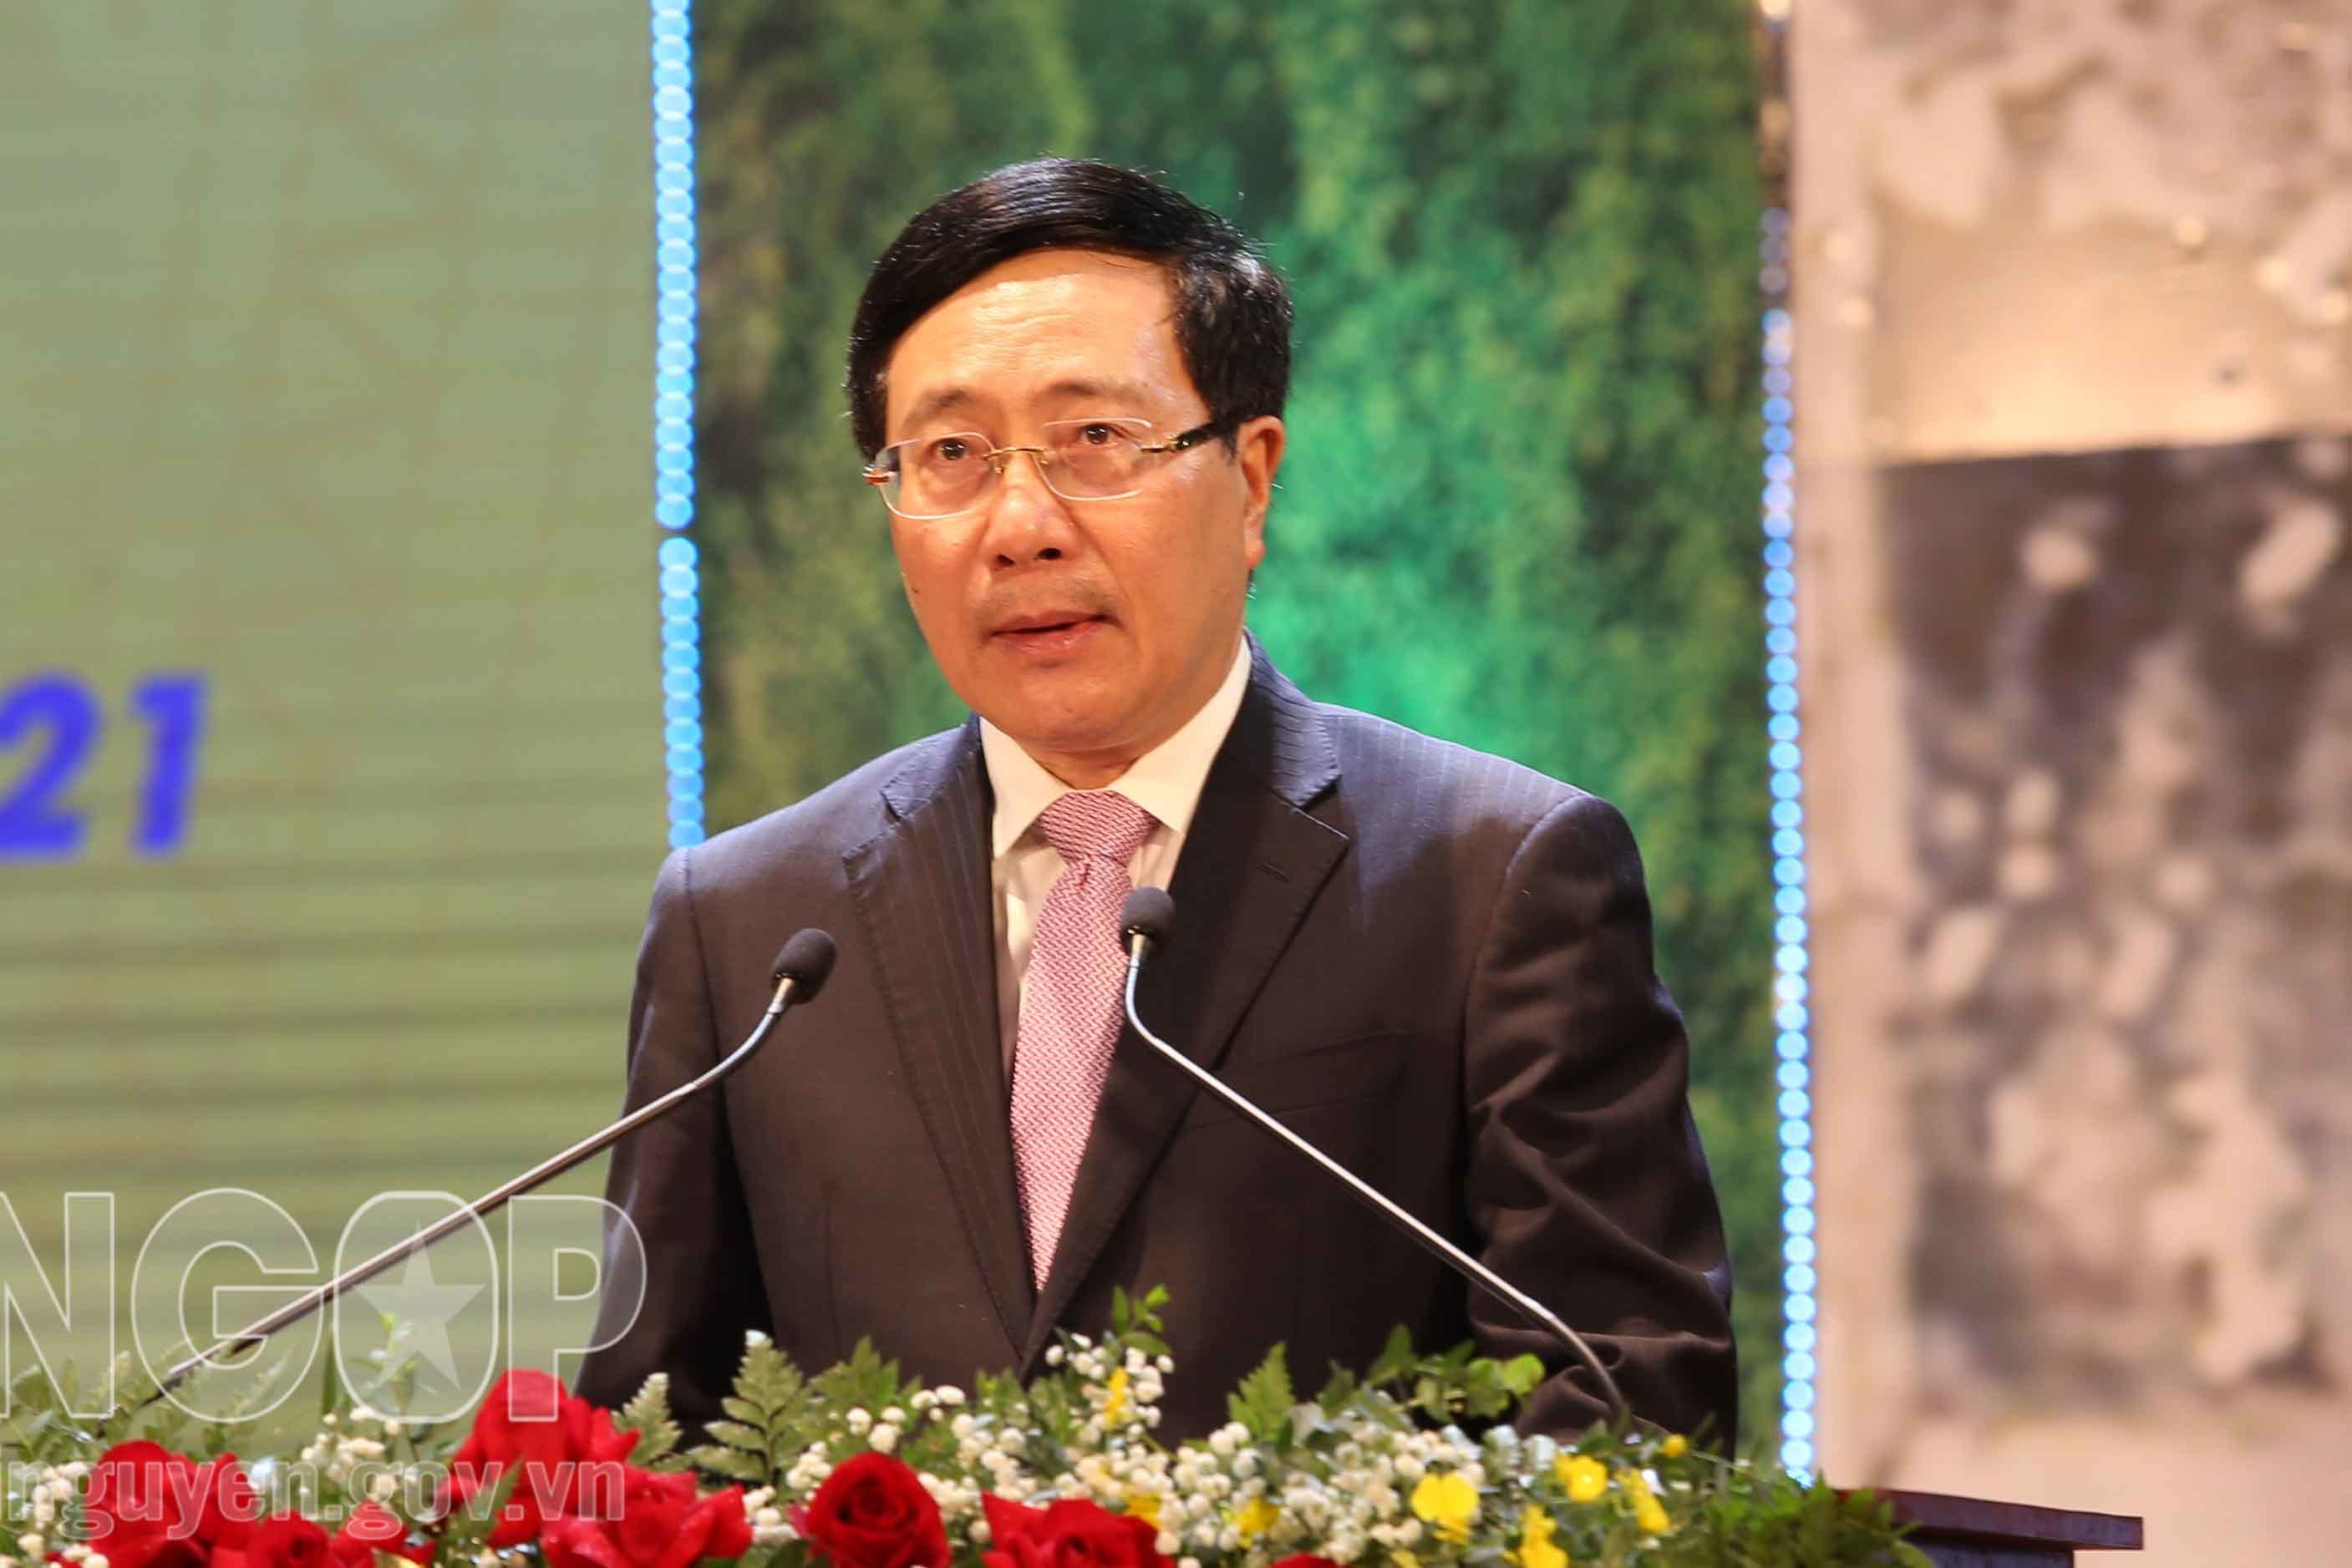 Phát biểu của Phó Thủ tướng Thường trực tại Lễ kỷ niệm 190 năm ngày thành lập tỉnh Thái Nguyên